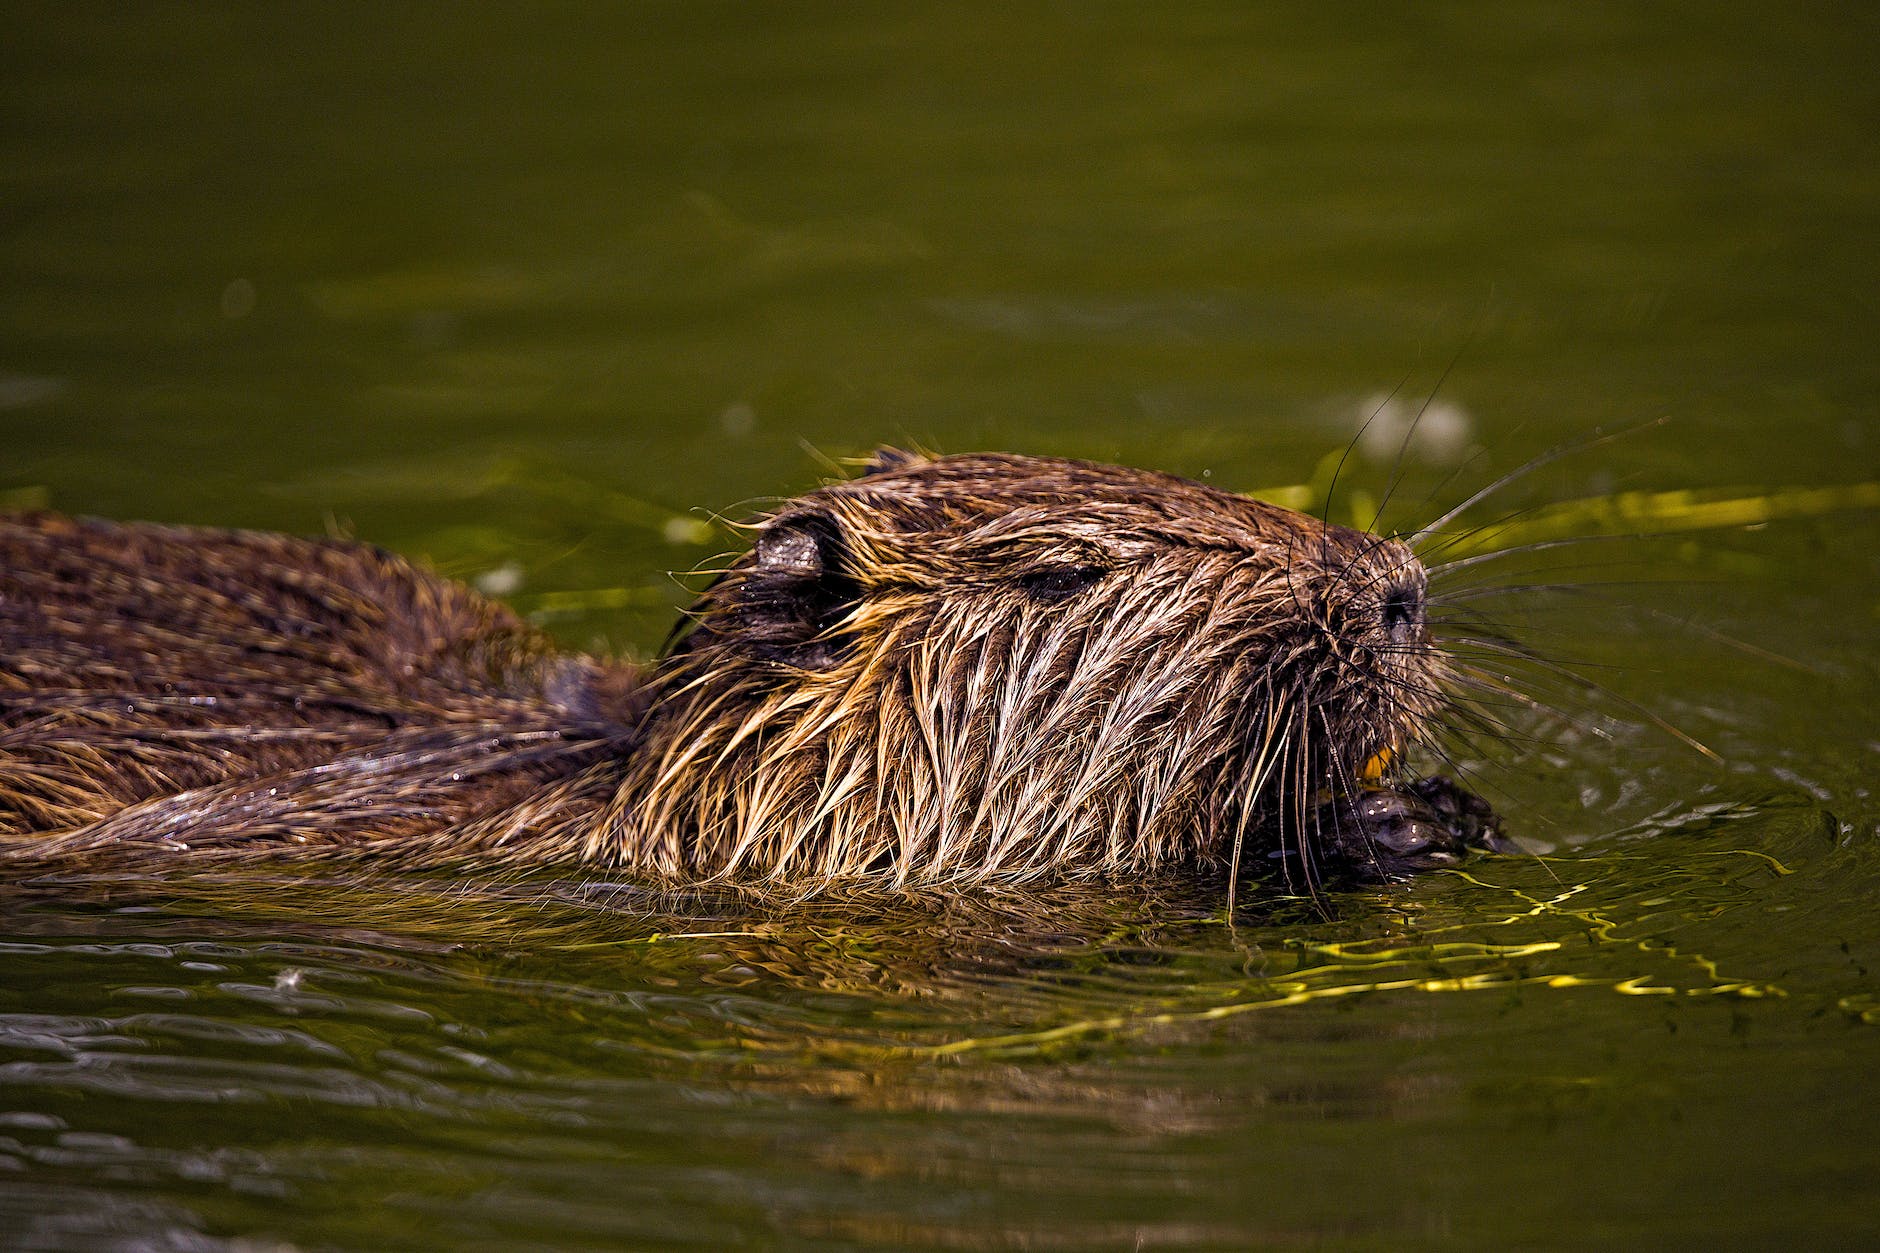 eurasian beaver swimming on the water